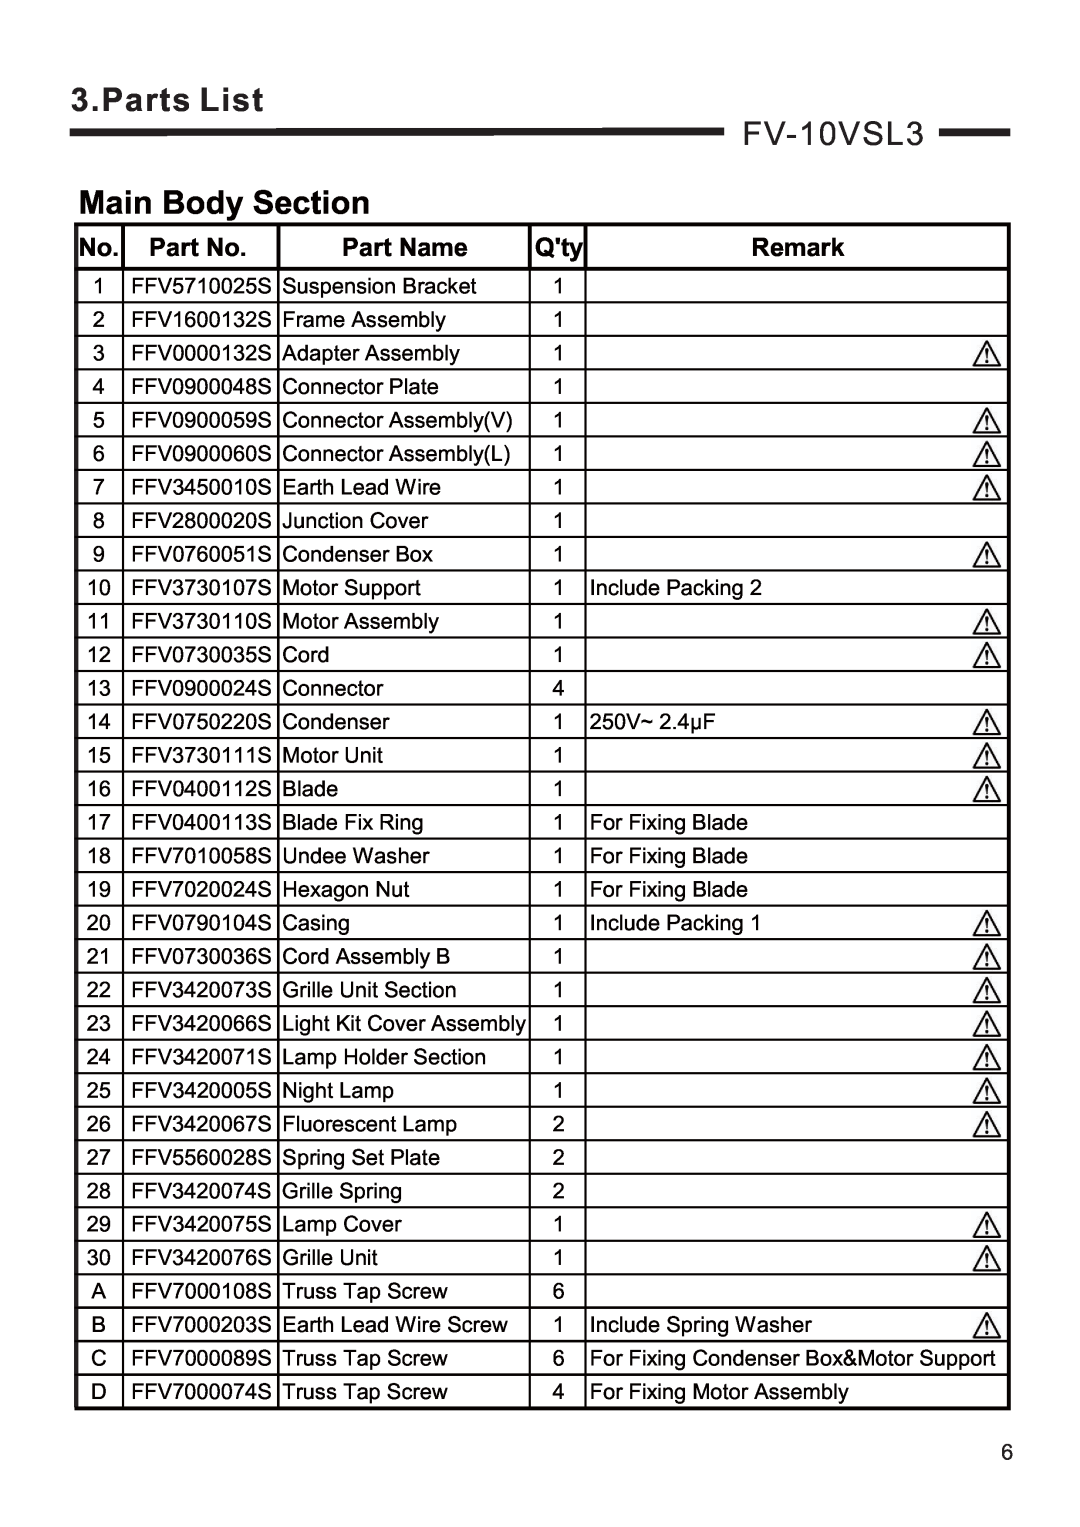 Panasonic FV-08VSL3 service manual FV-10VSL3, Parts List, Main Body Section, Part Name, Remark 